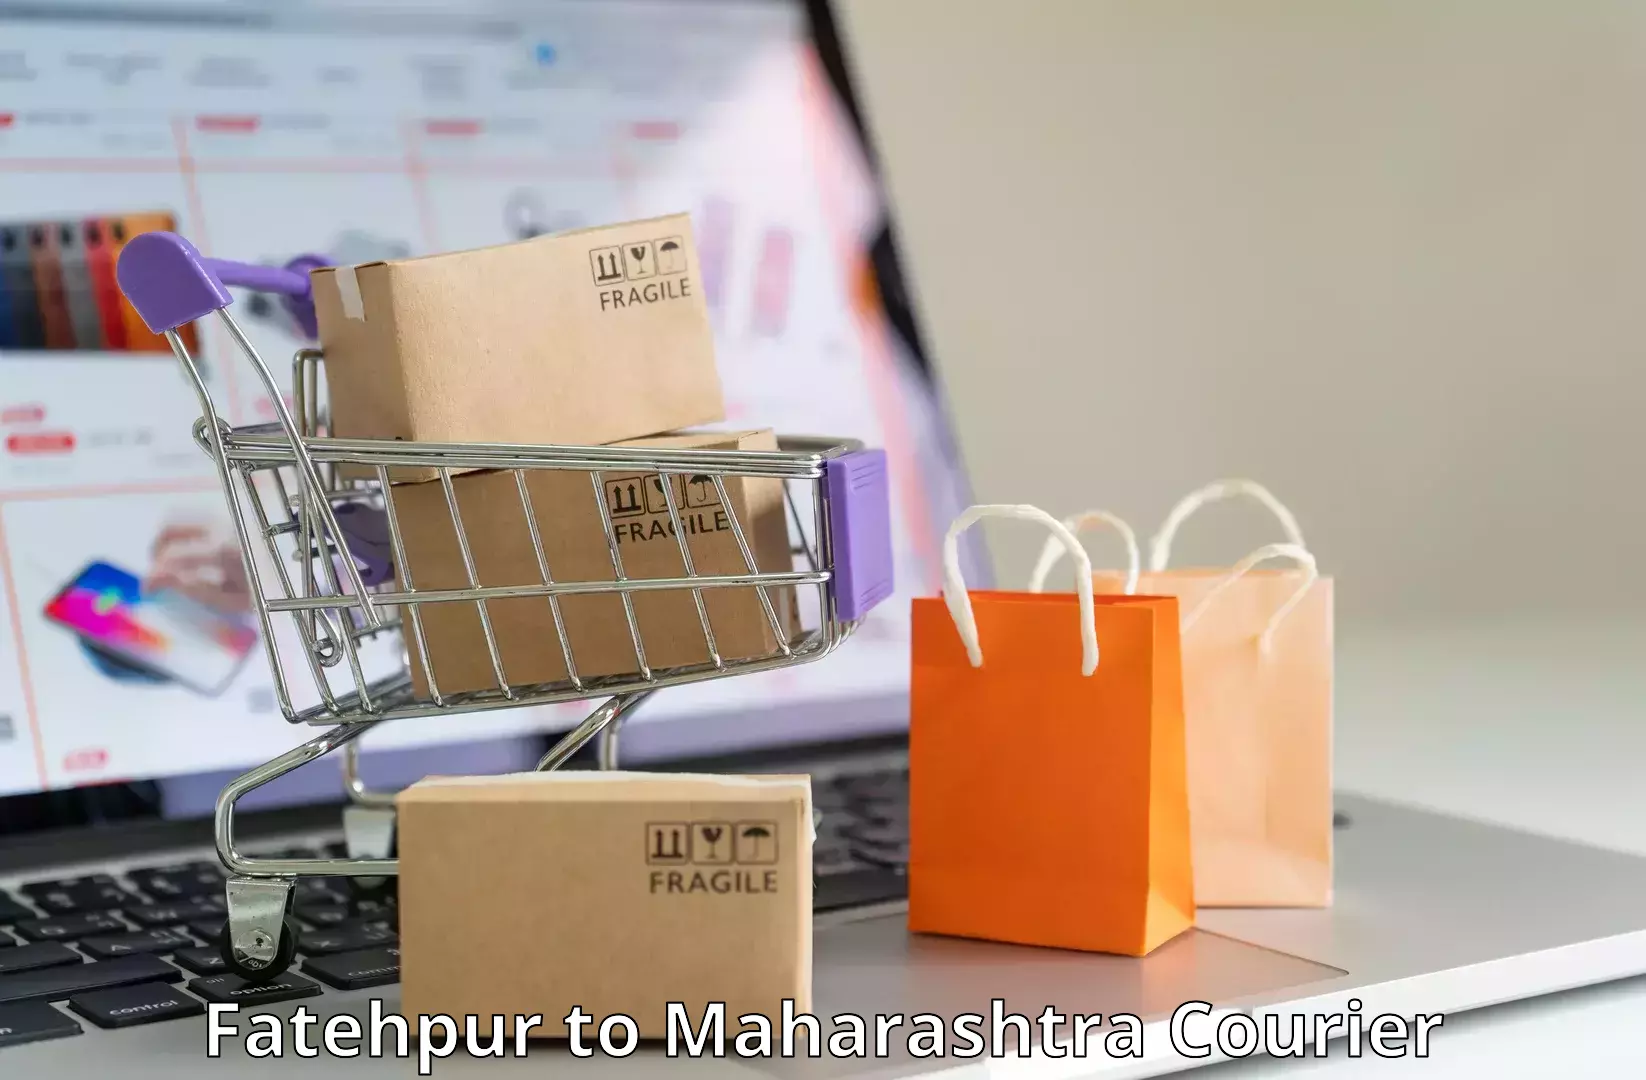 Flexible parcel services Fatehpur to Borivali